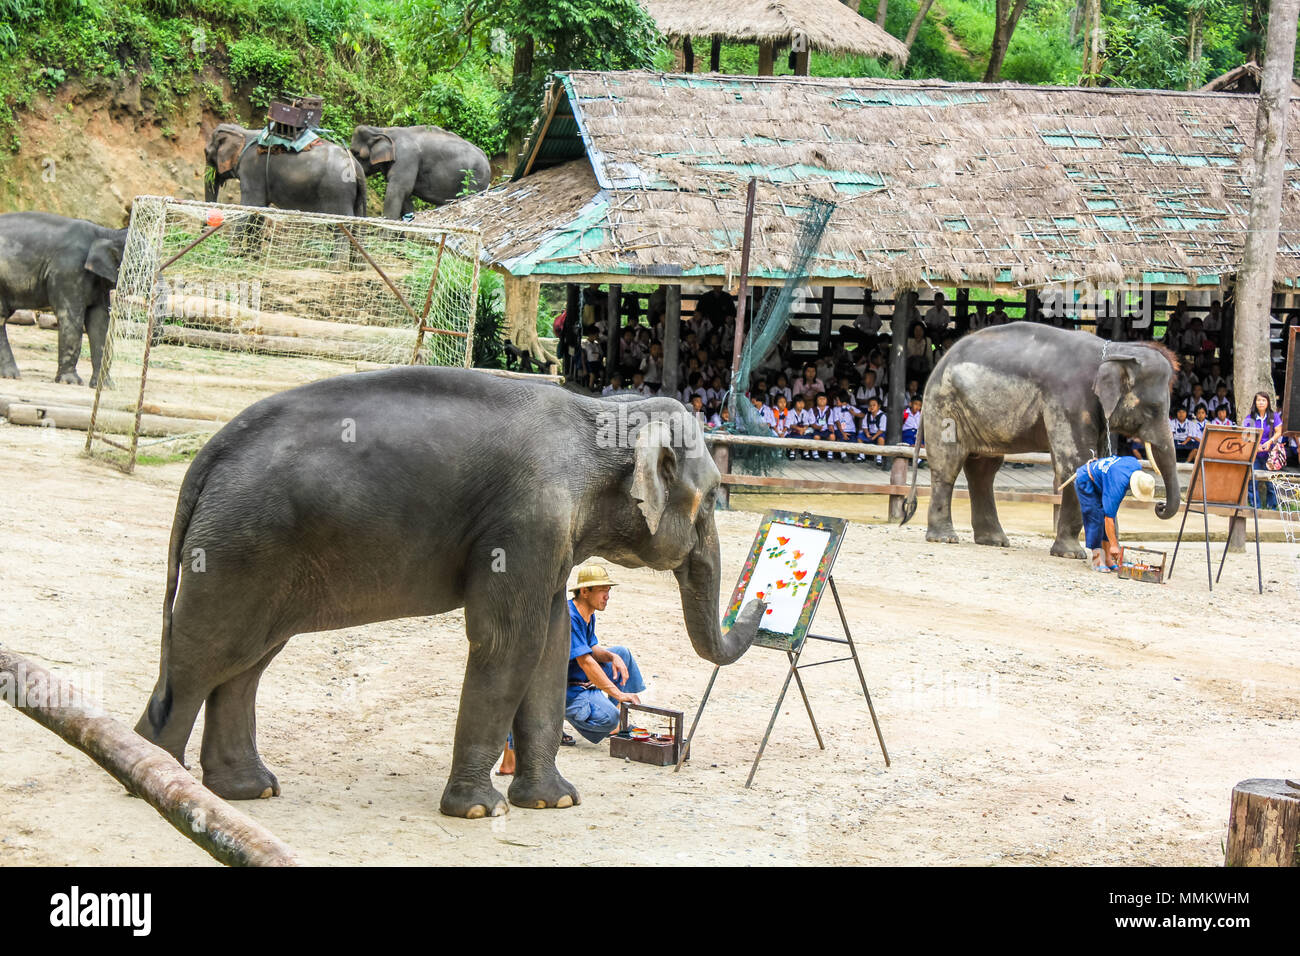 Le district de Muang, Chiang Mai, Thaïlande - 25 juillet 2011 : un dessin Elaphant peinture fleurs. Elephant Show at Maesa Elephant Camp. Tous les éléphants de ce sanctuaire et bien traités et nourris, et ils passent la journée avec leurs formateurs plaing et divertir les visiteurs Banque D'Images